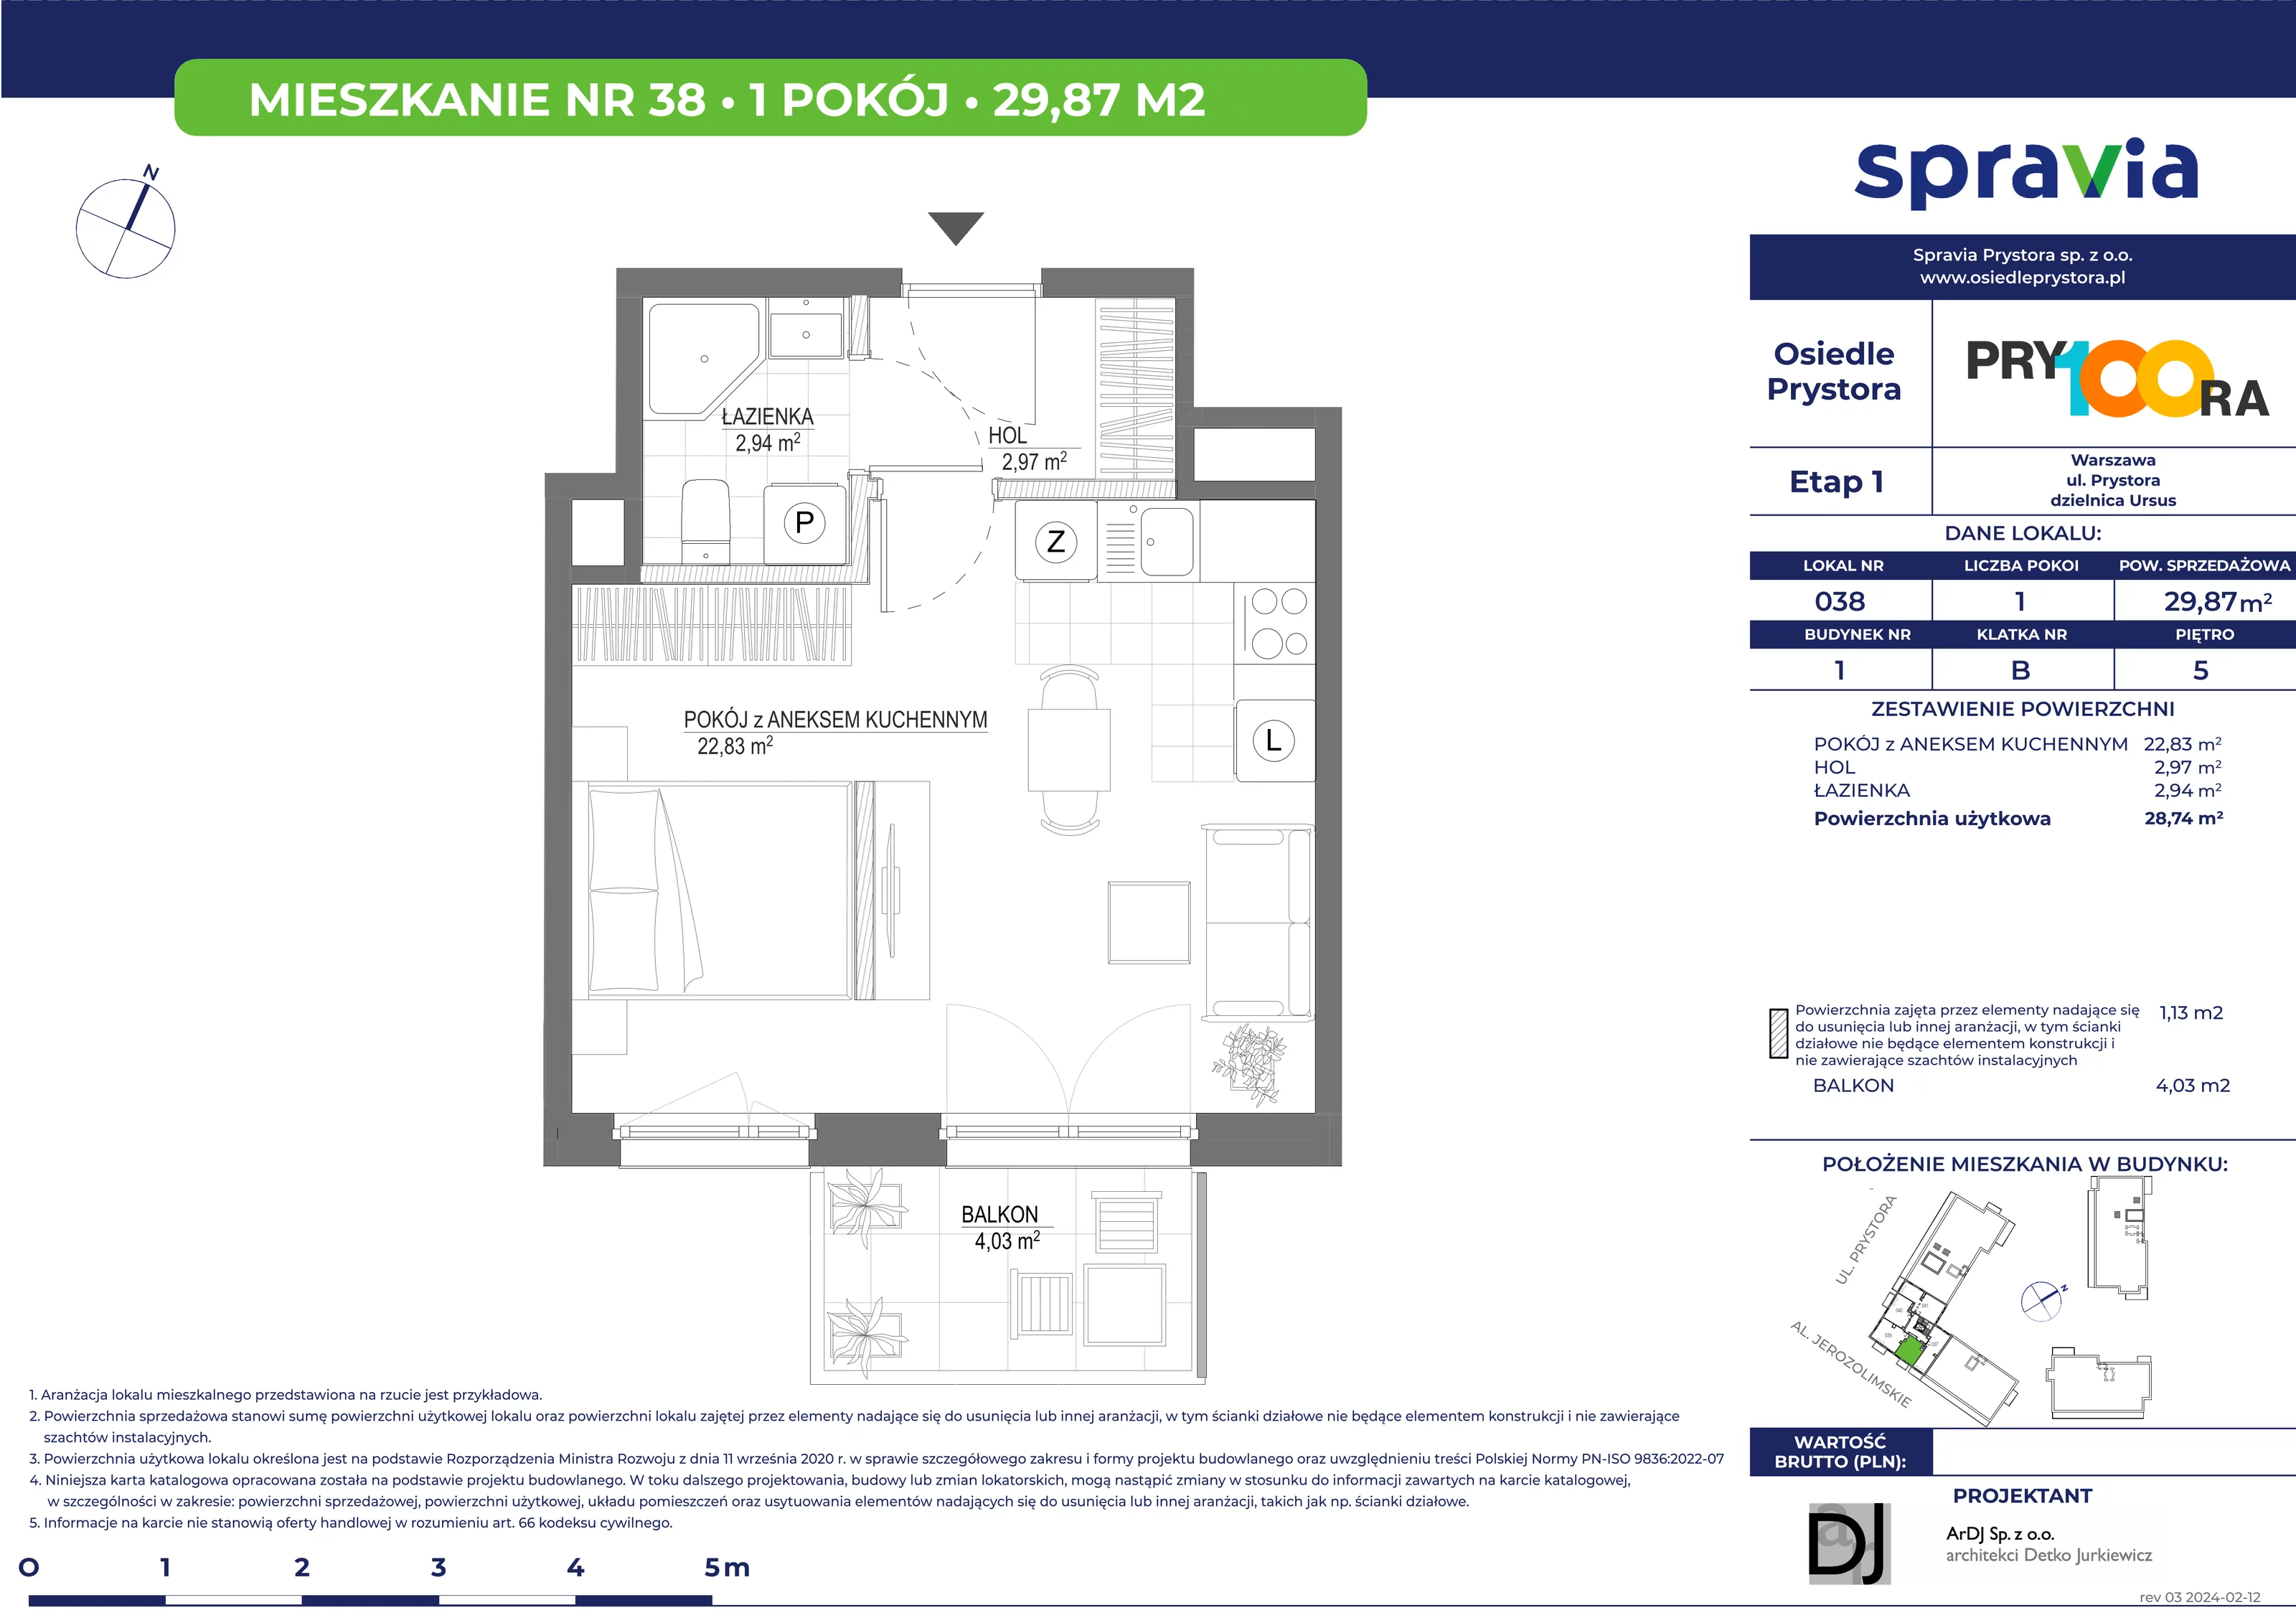 Mieszkanie 29,87 m², piętro 5, oferta nr 38, Osiedle Prystora, Warszawa, Ursus, Skorosze, ul. Prystora